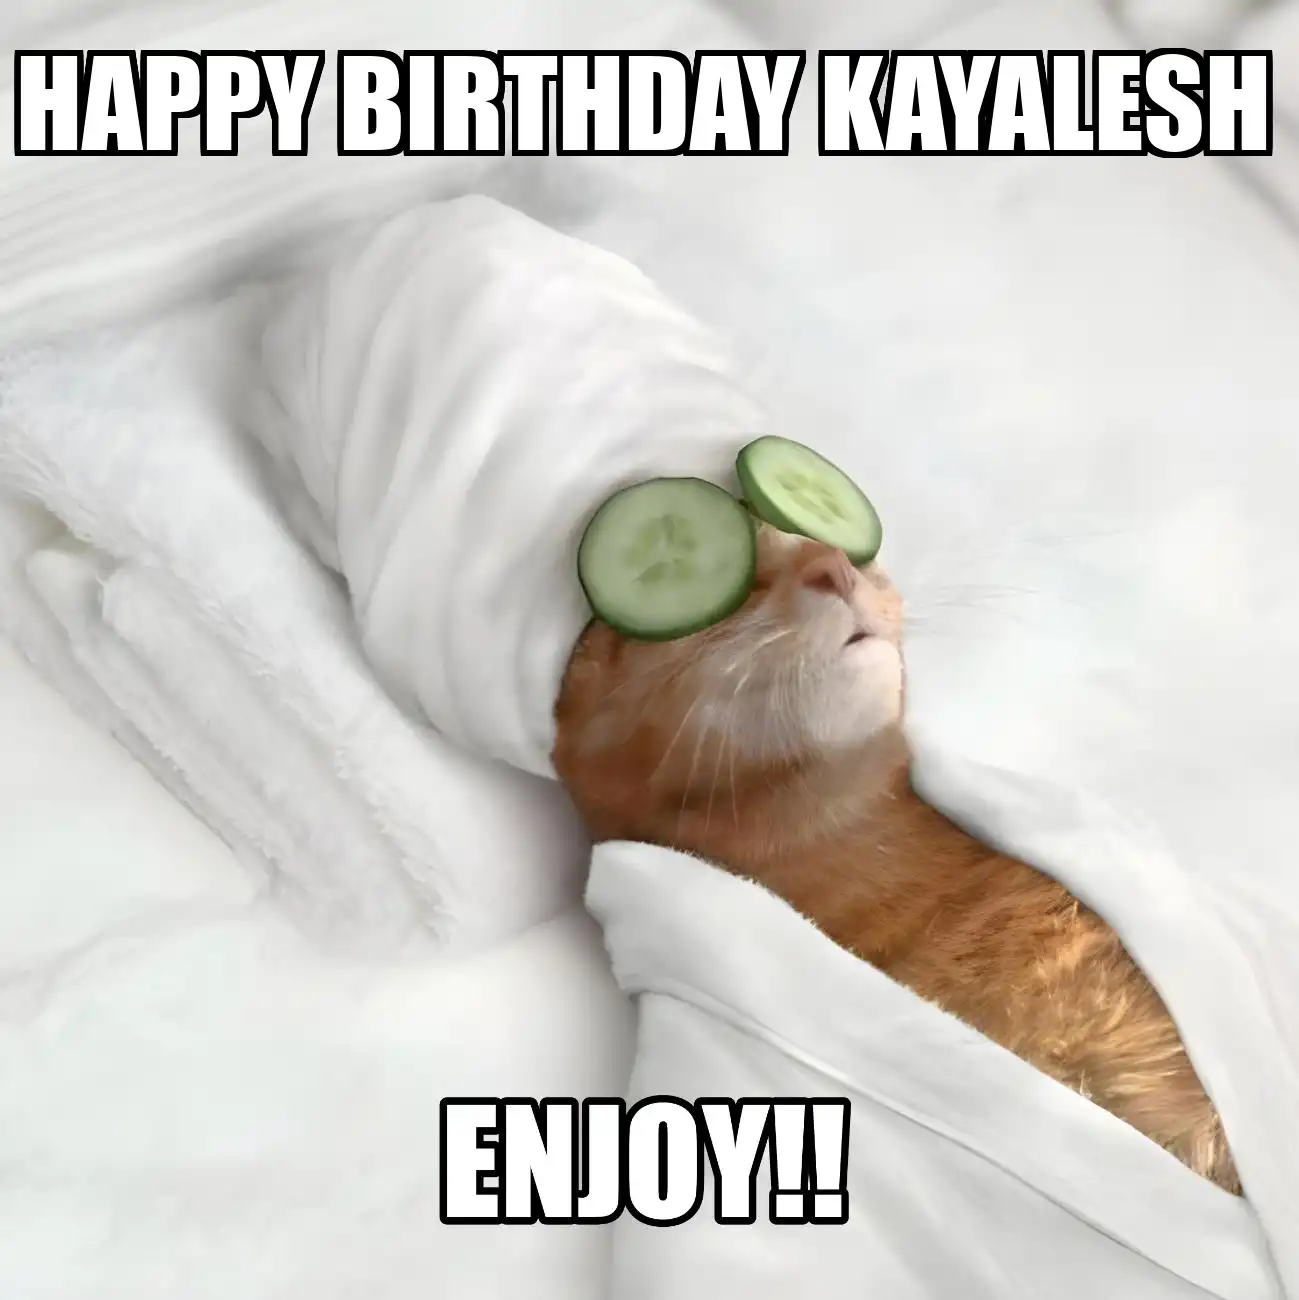 Happy Birthday Kayalesh Enjoy Cat Meme